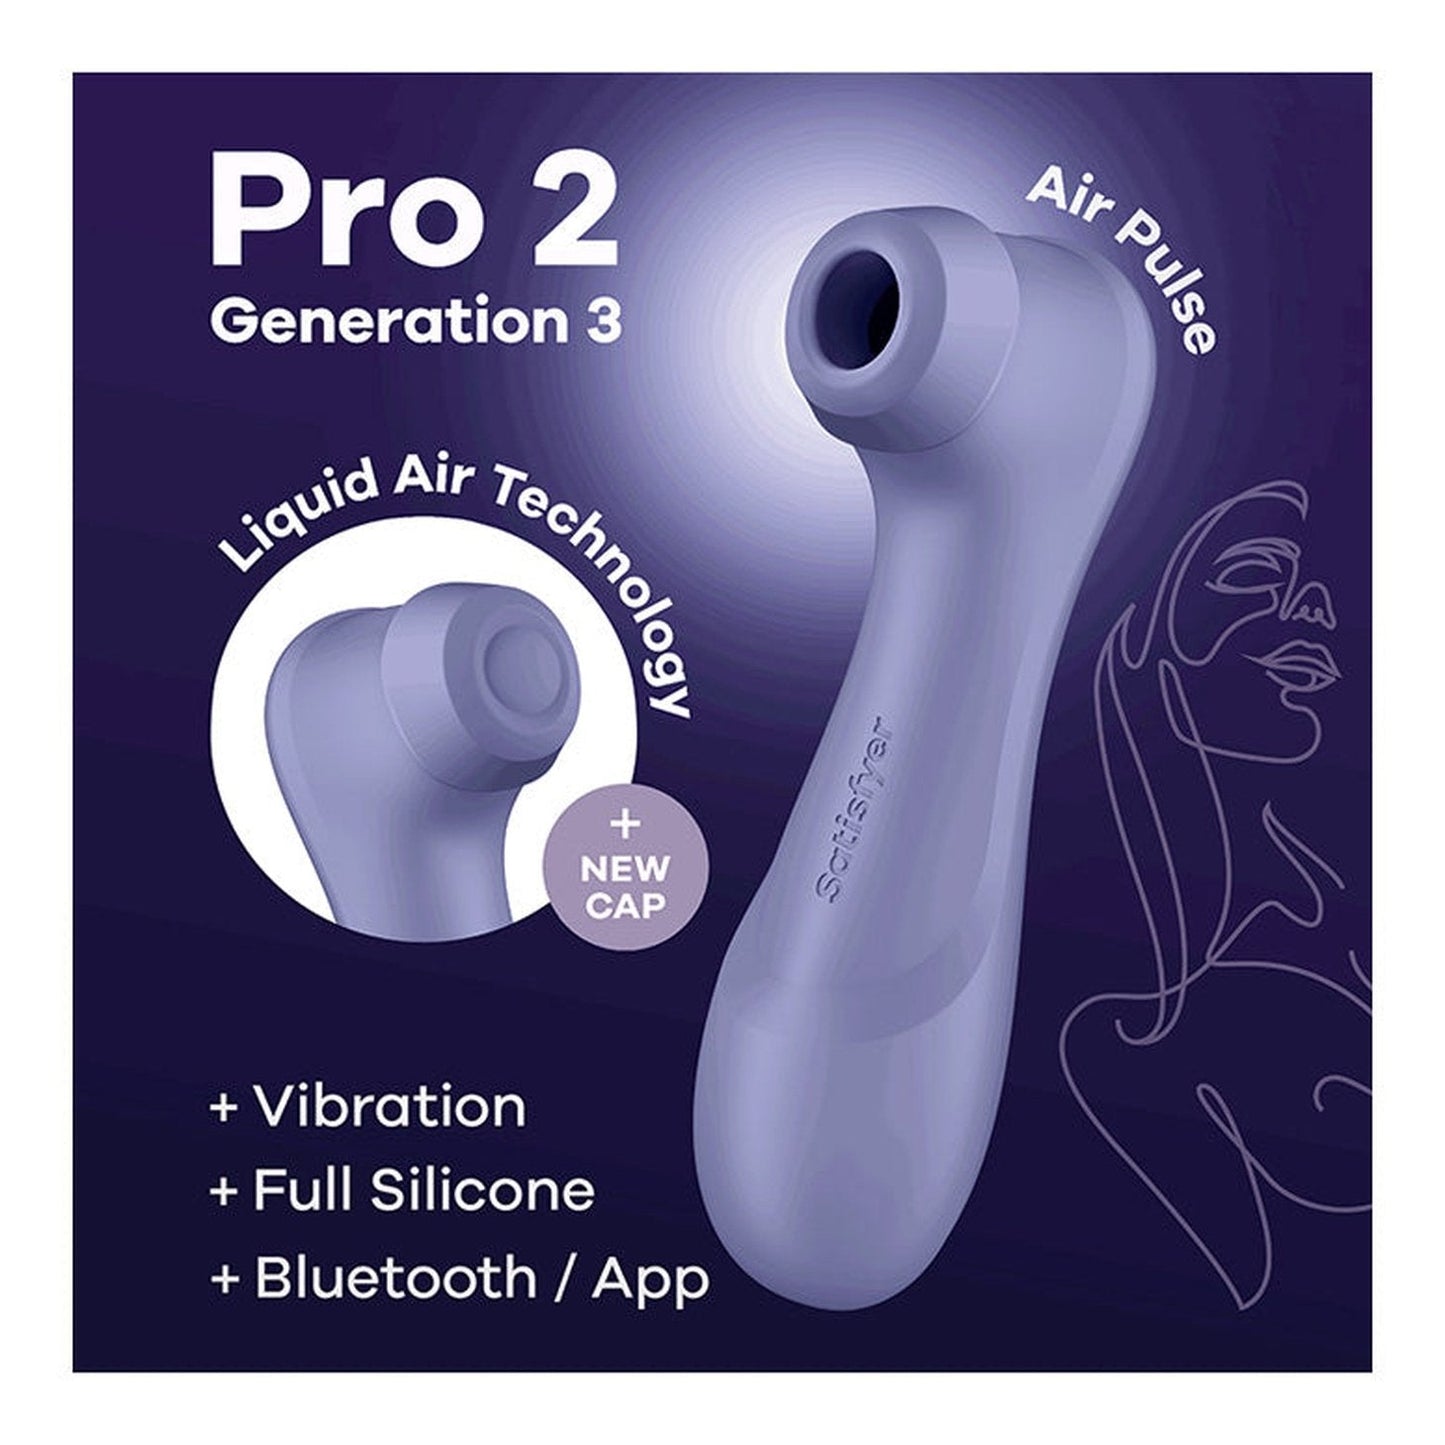 Pro 2 Generation 3 + Liquid Air, Vibration & App - Lilac